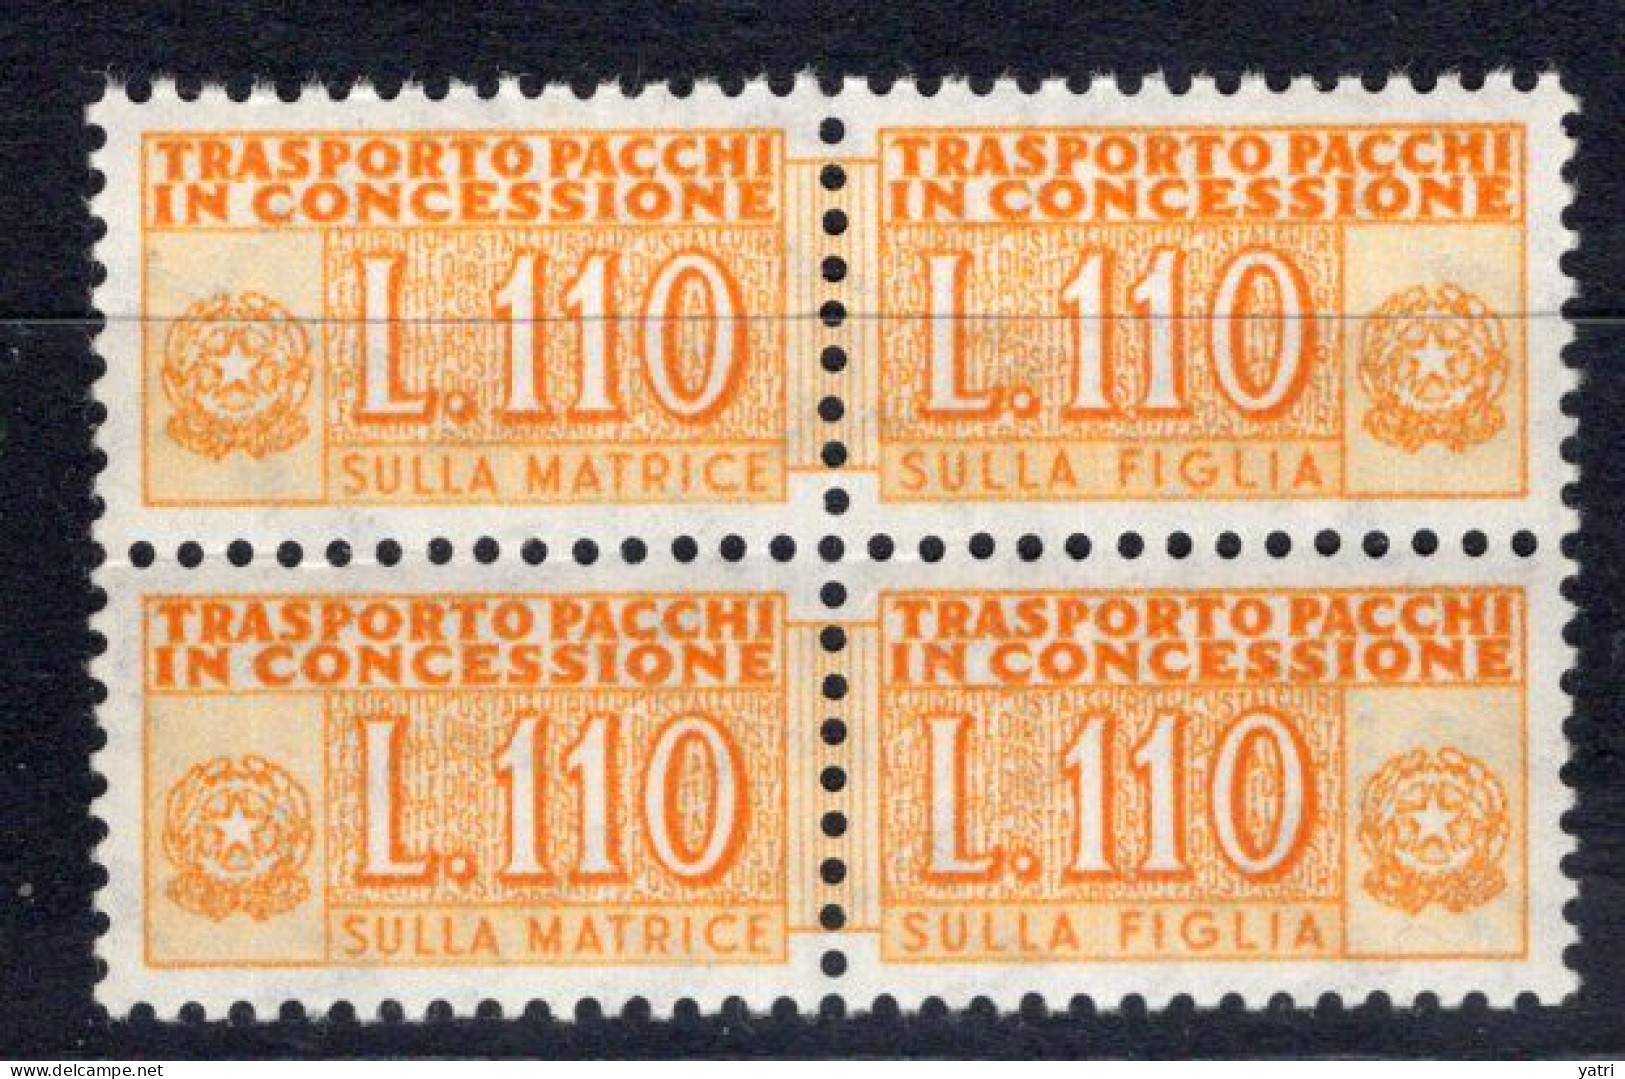 Italia (1955) - Pacchi In Concessione, 110 Lire Fil. Stelle 4° Tipo, Sass. 13/II ** - Colis-concession